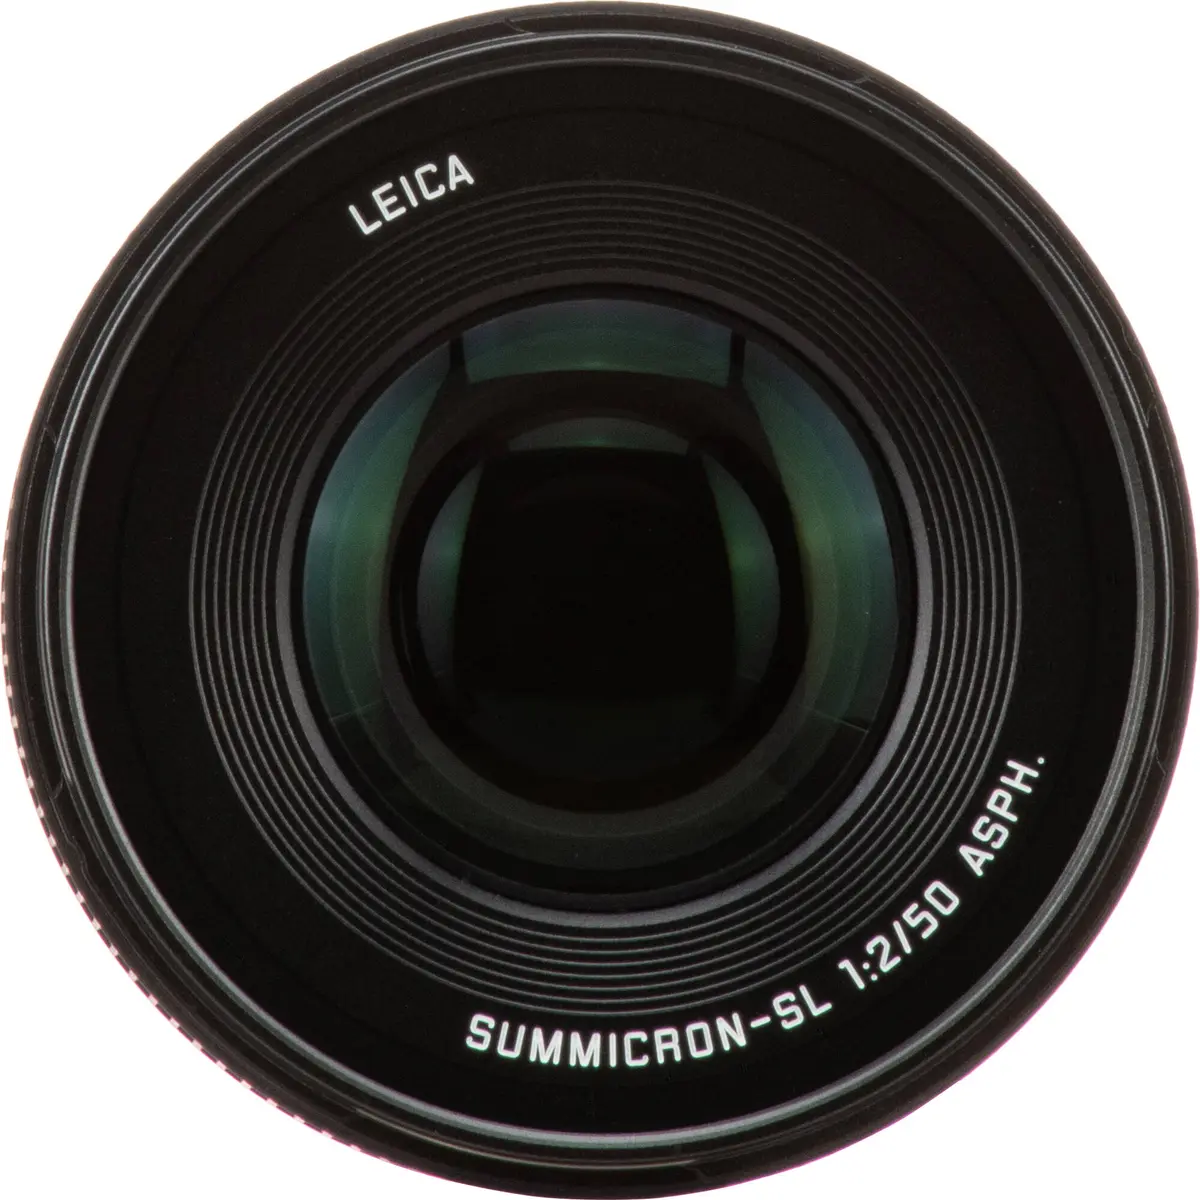 3. Leica Summicron-SL 50mm F2 ASPH. (11193)